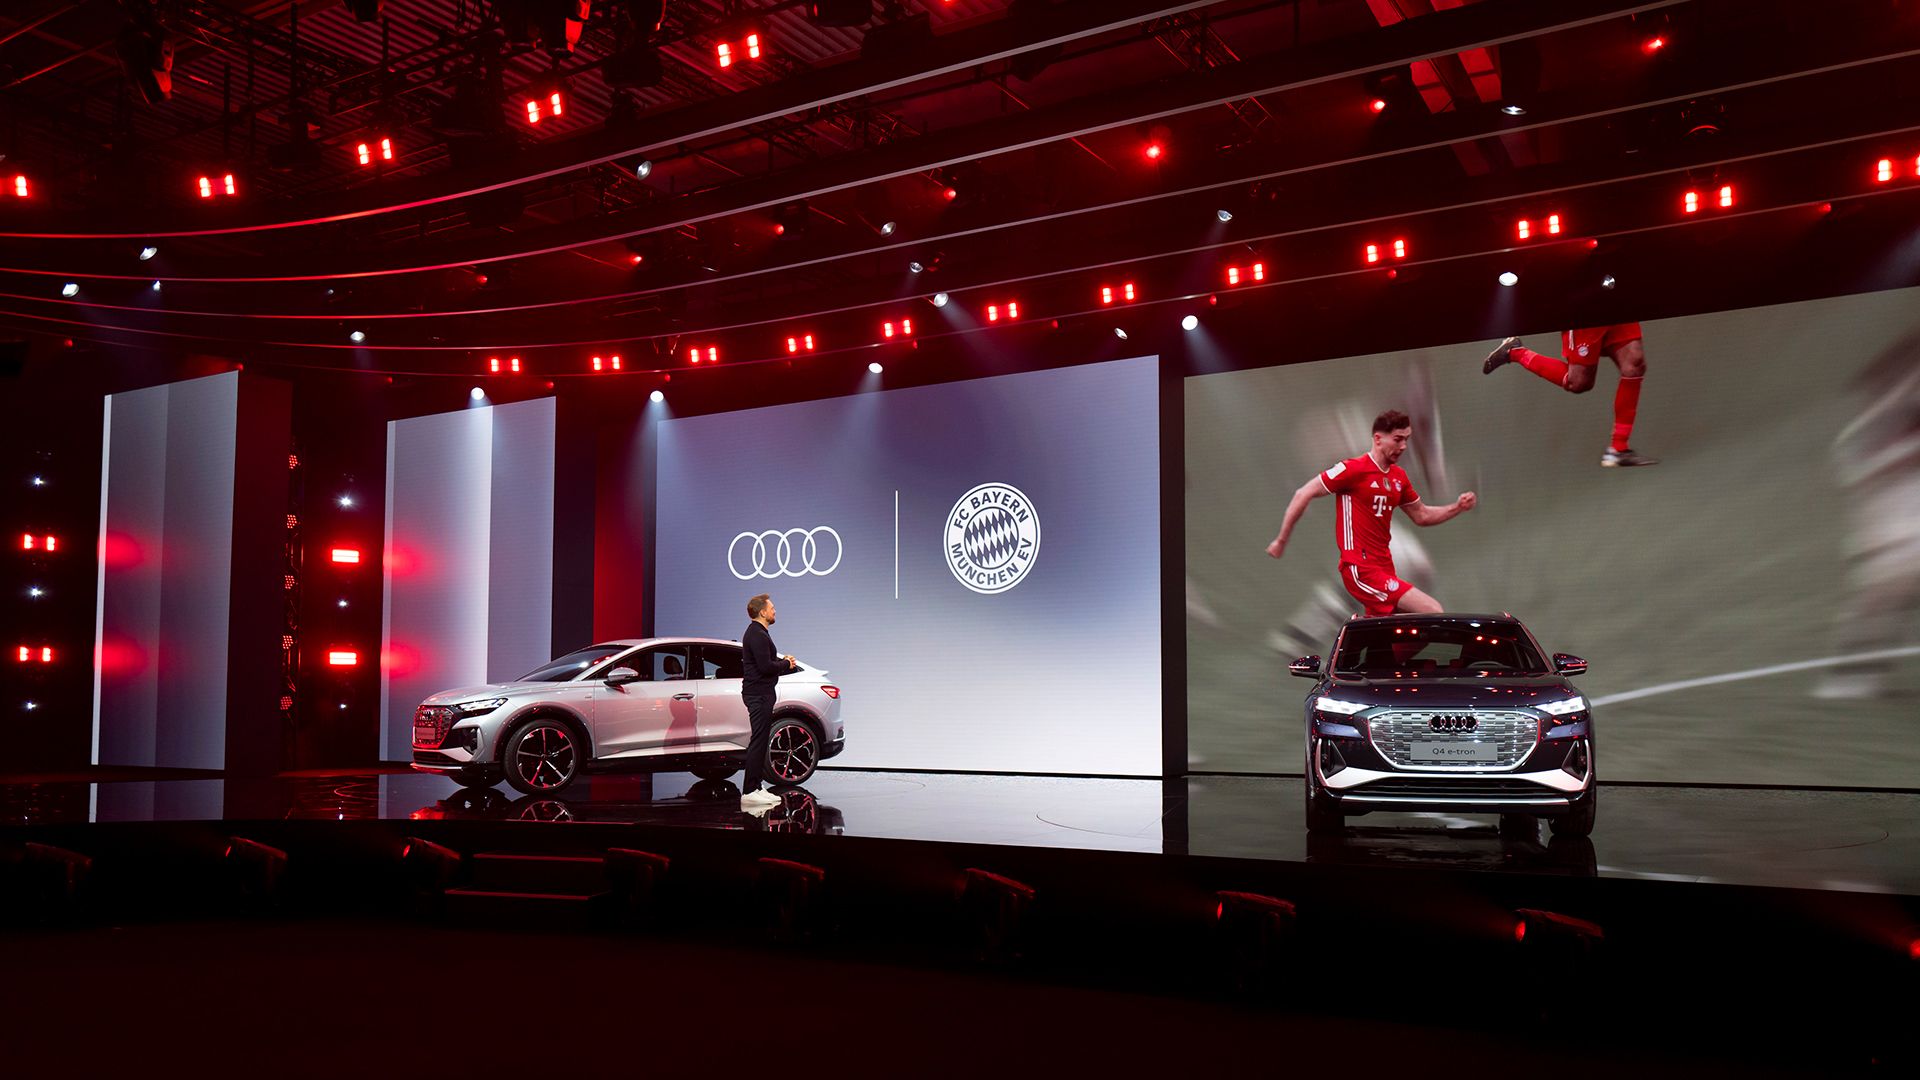 Op het toneel staan twee Audi modellen. Op het scherm zijn voetballers te zien.